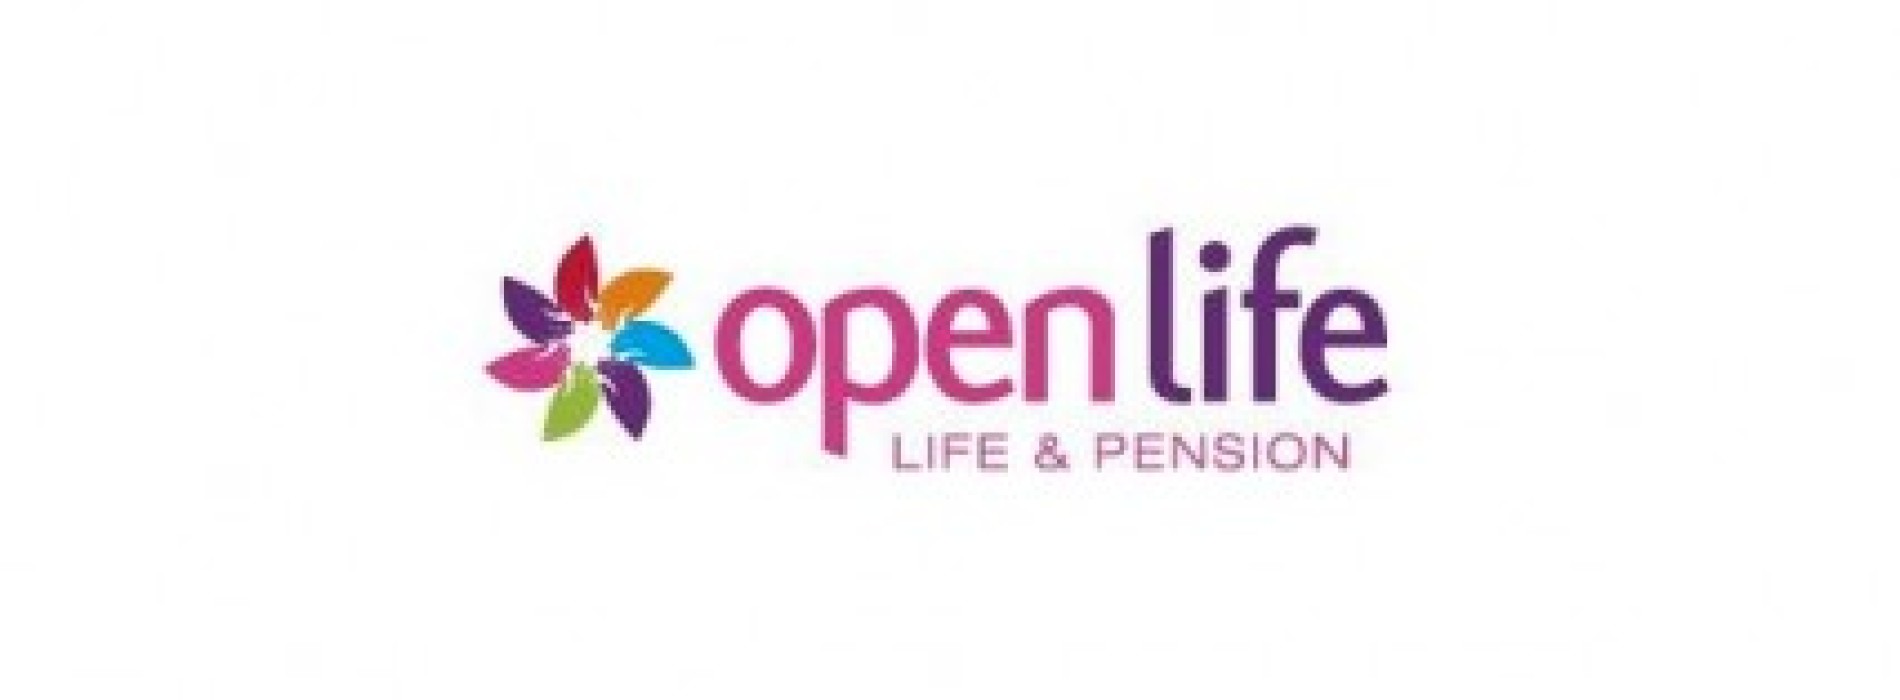 Open Life wdraża projekt mający na celu zwiększenie przejrzystości produktów